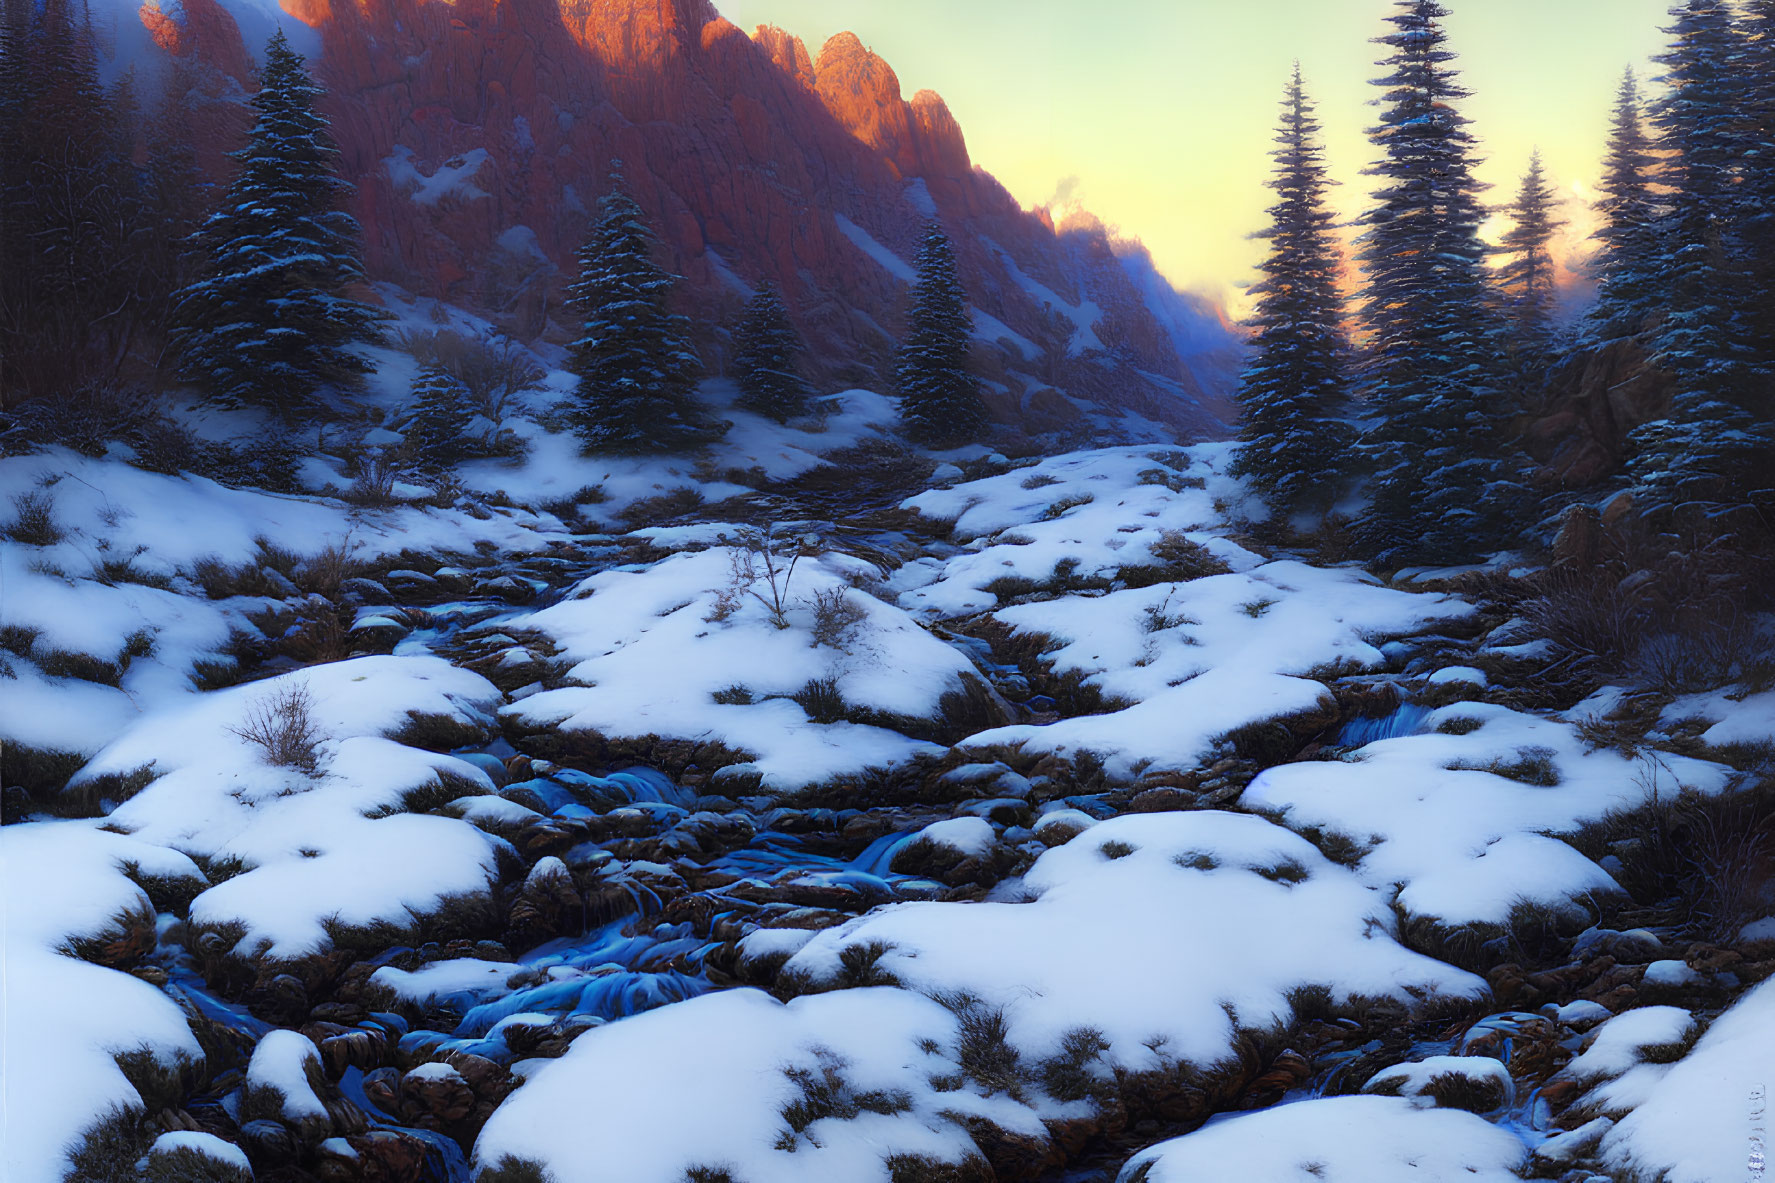 Winter Scene: Snowy Landscape, Winding Stream, Pine Trees, Glowing Mountain